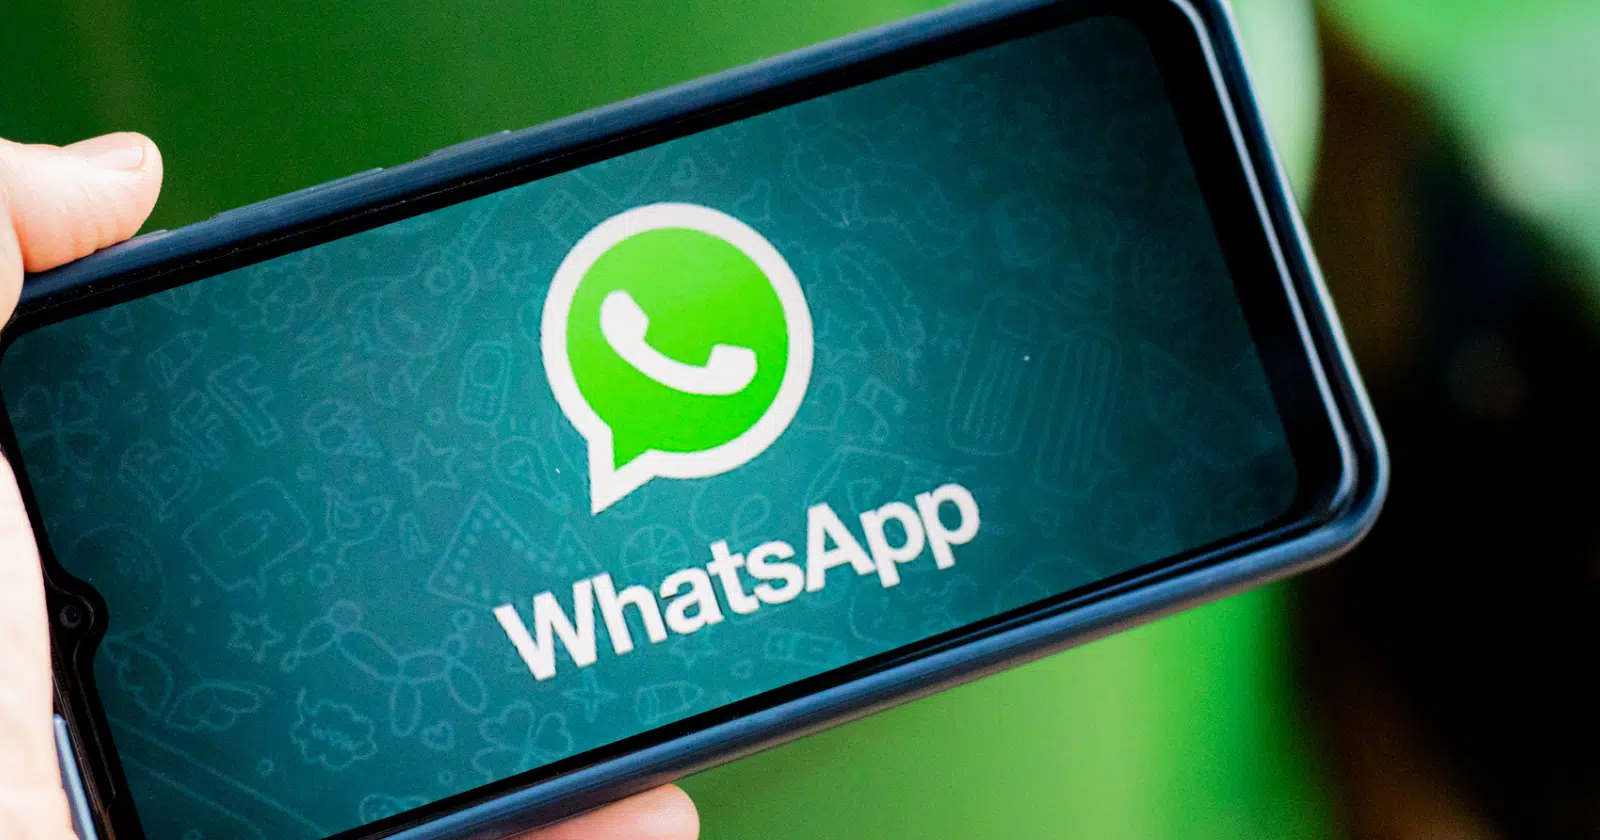 Saiba se sua mensagem do WhatsApp foi lida sem as marcas azuis